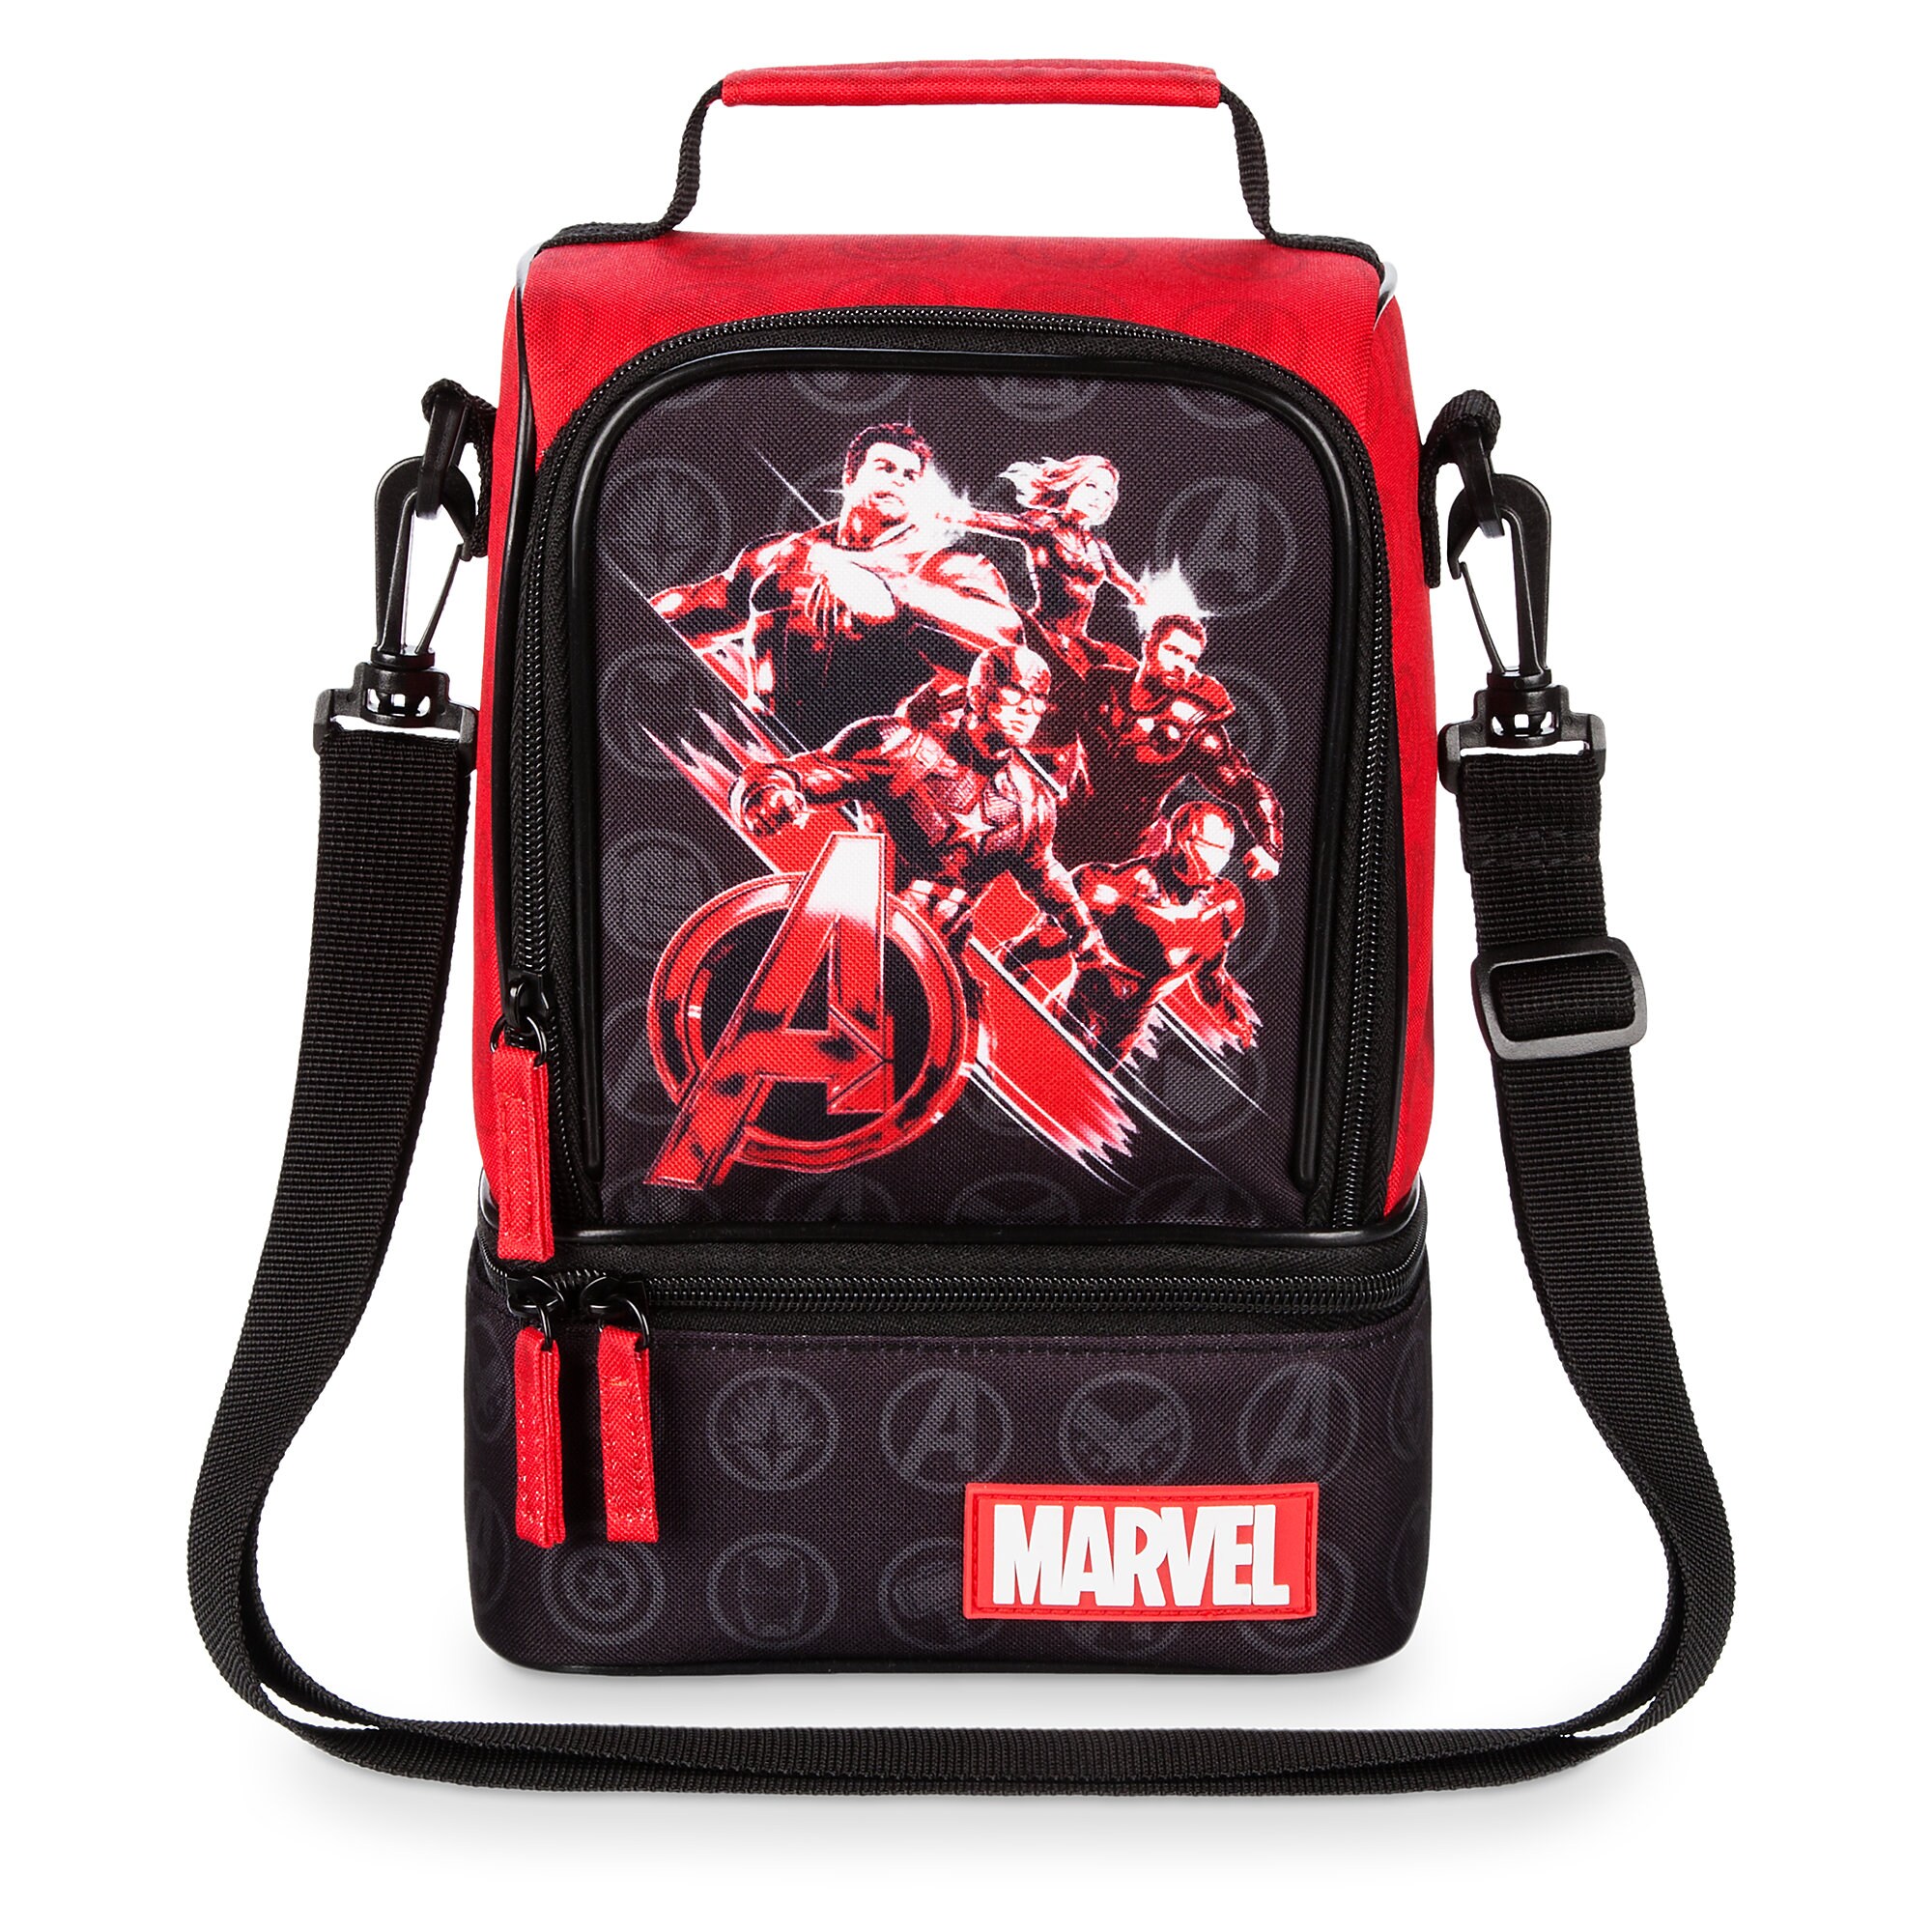 Marvel's Avengers: Endgame Lunch Box